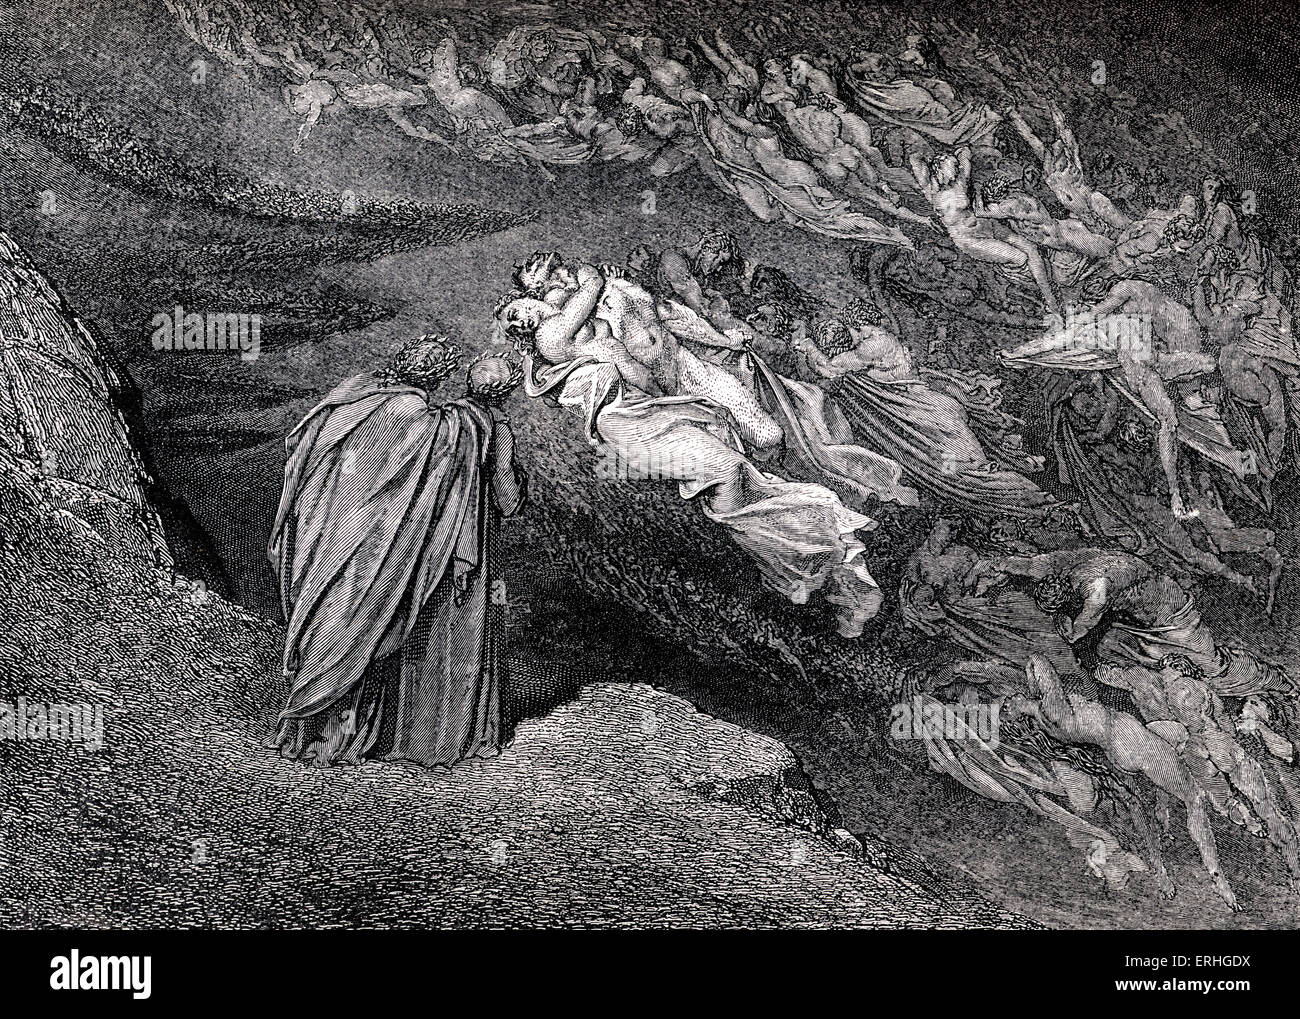 A Divina Comédia - Inferno: Gustave Dore